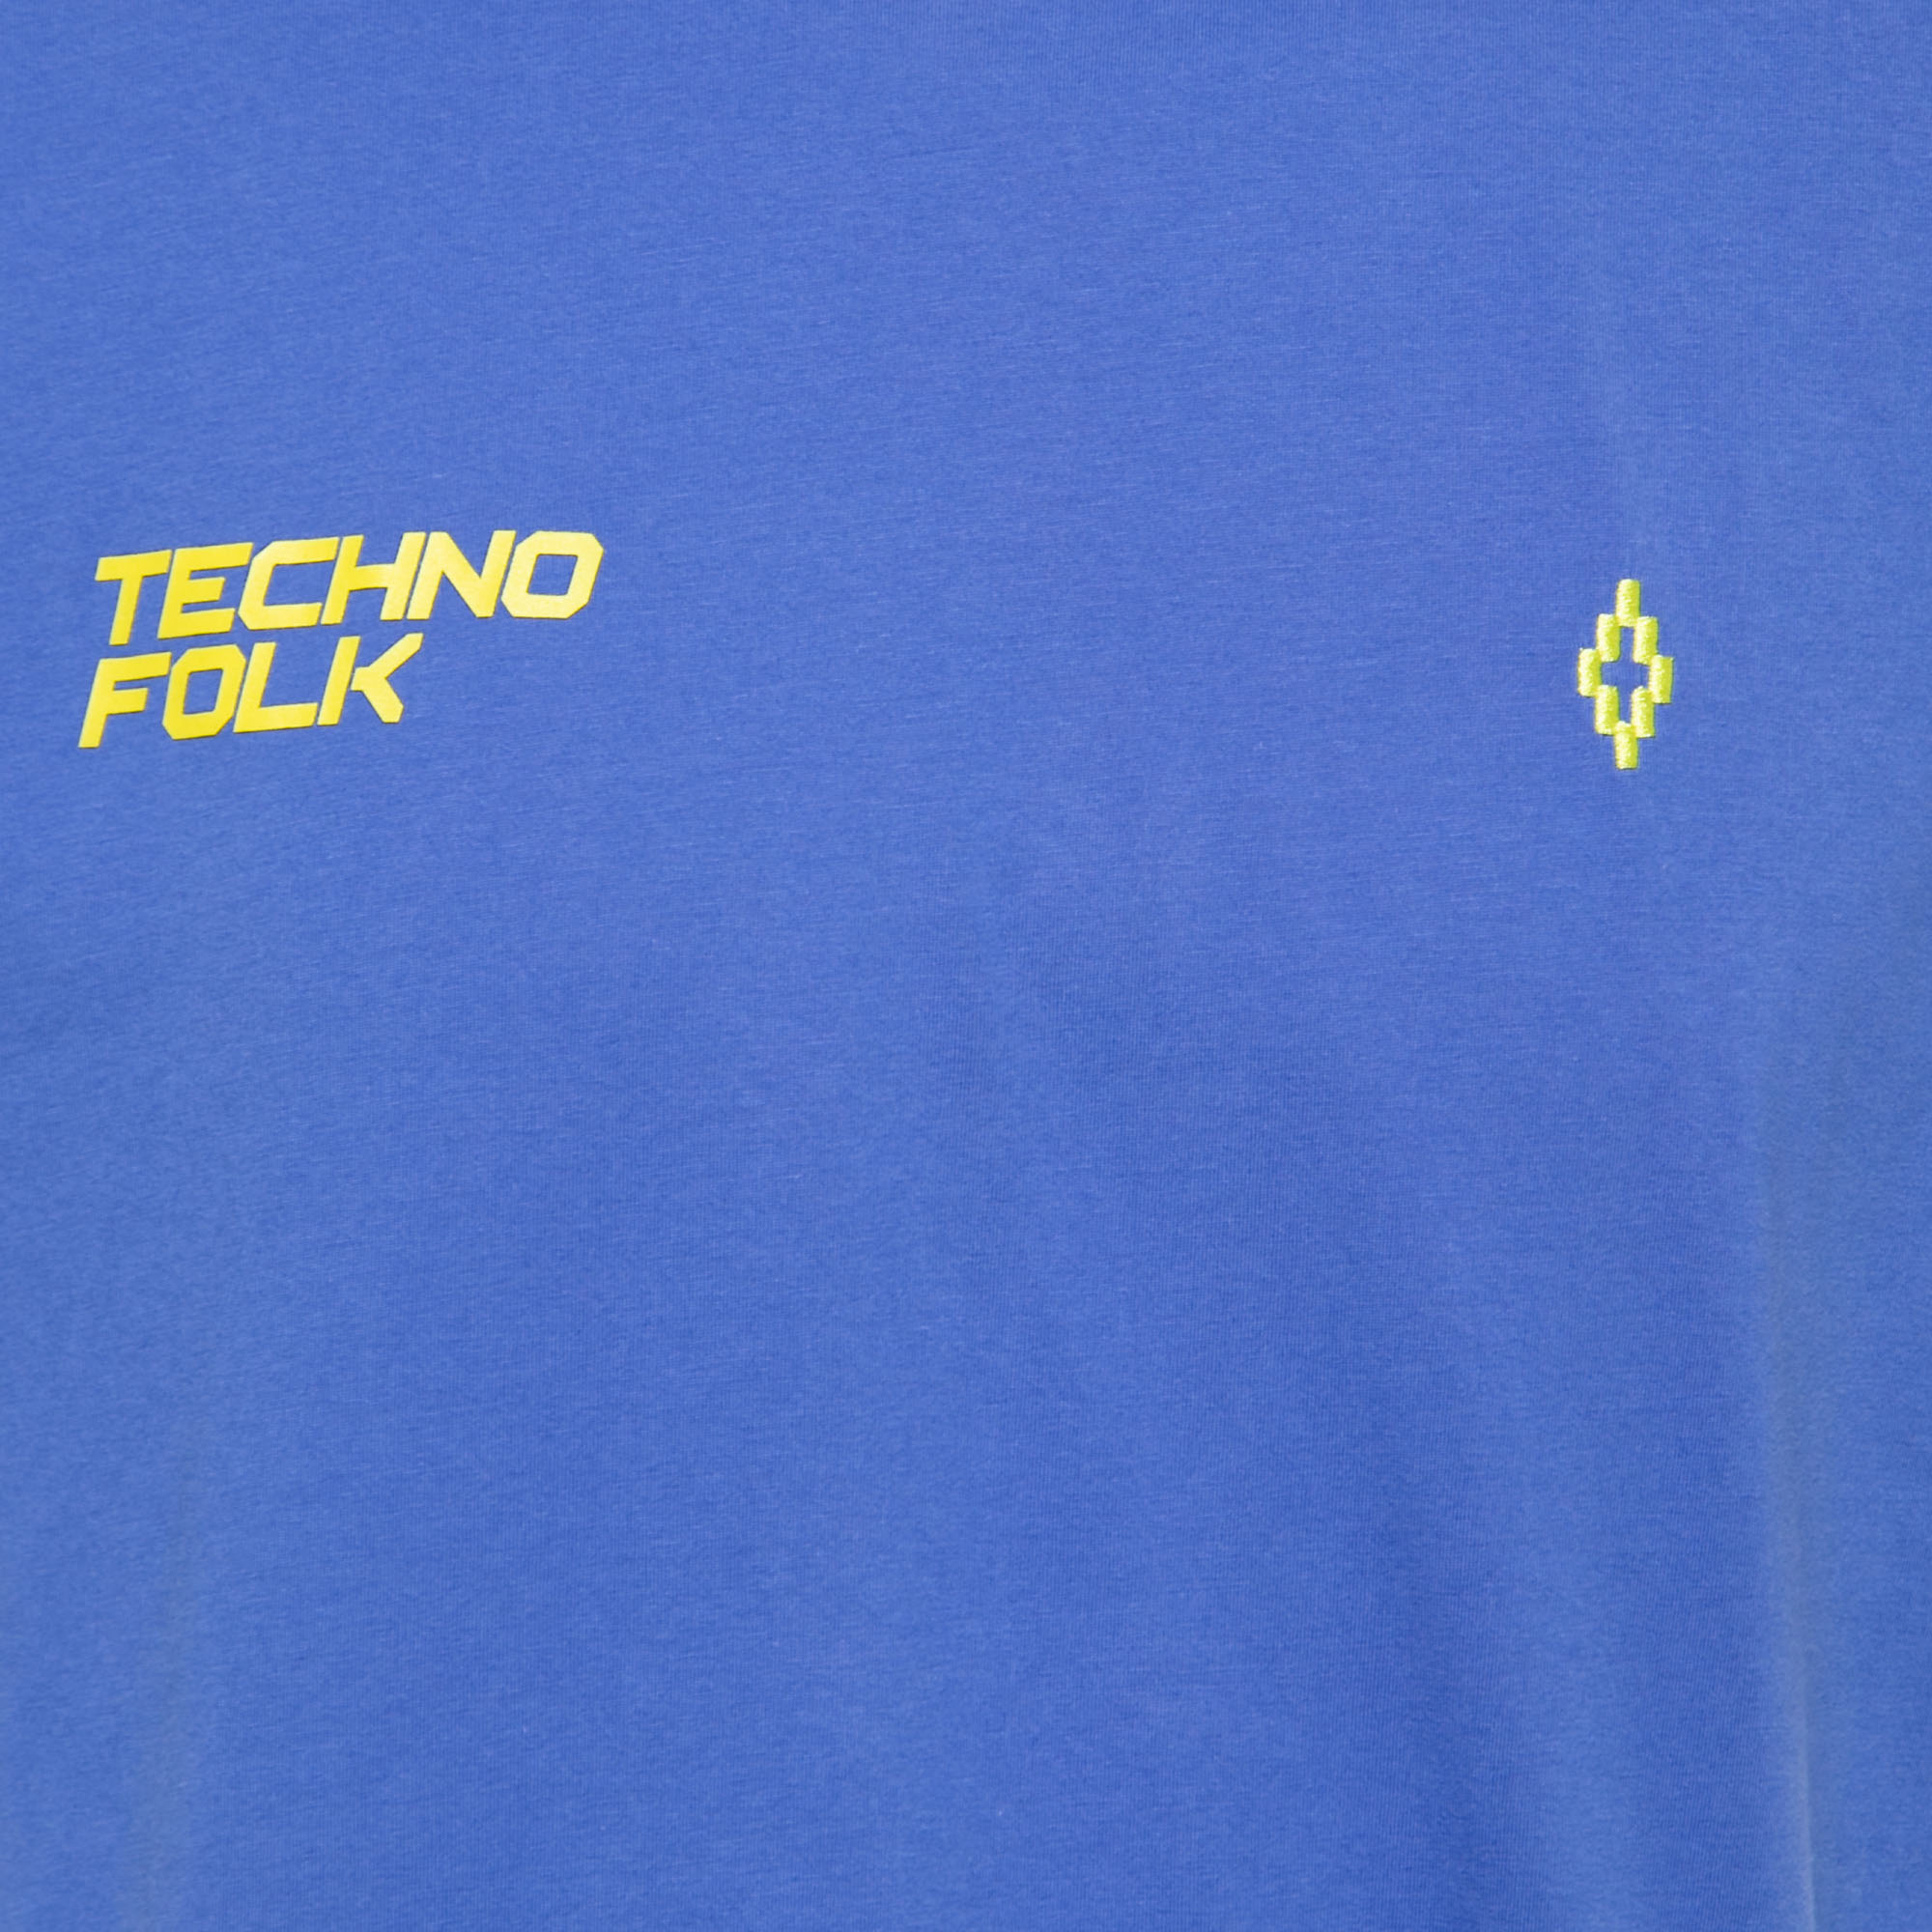 Marcelo Burlon Blue Cotton Printed Crew Neck T-Shirt S